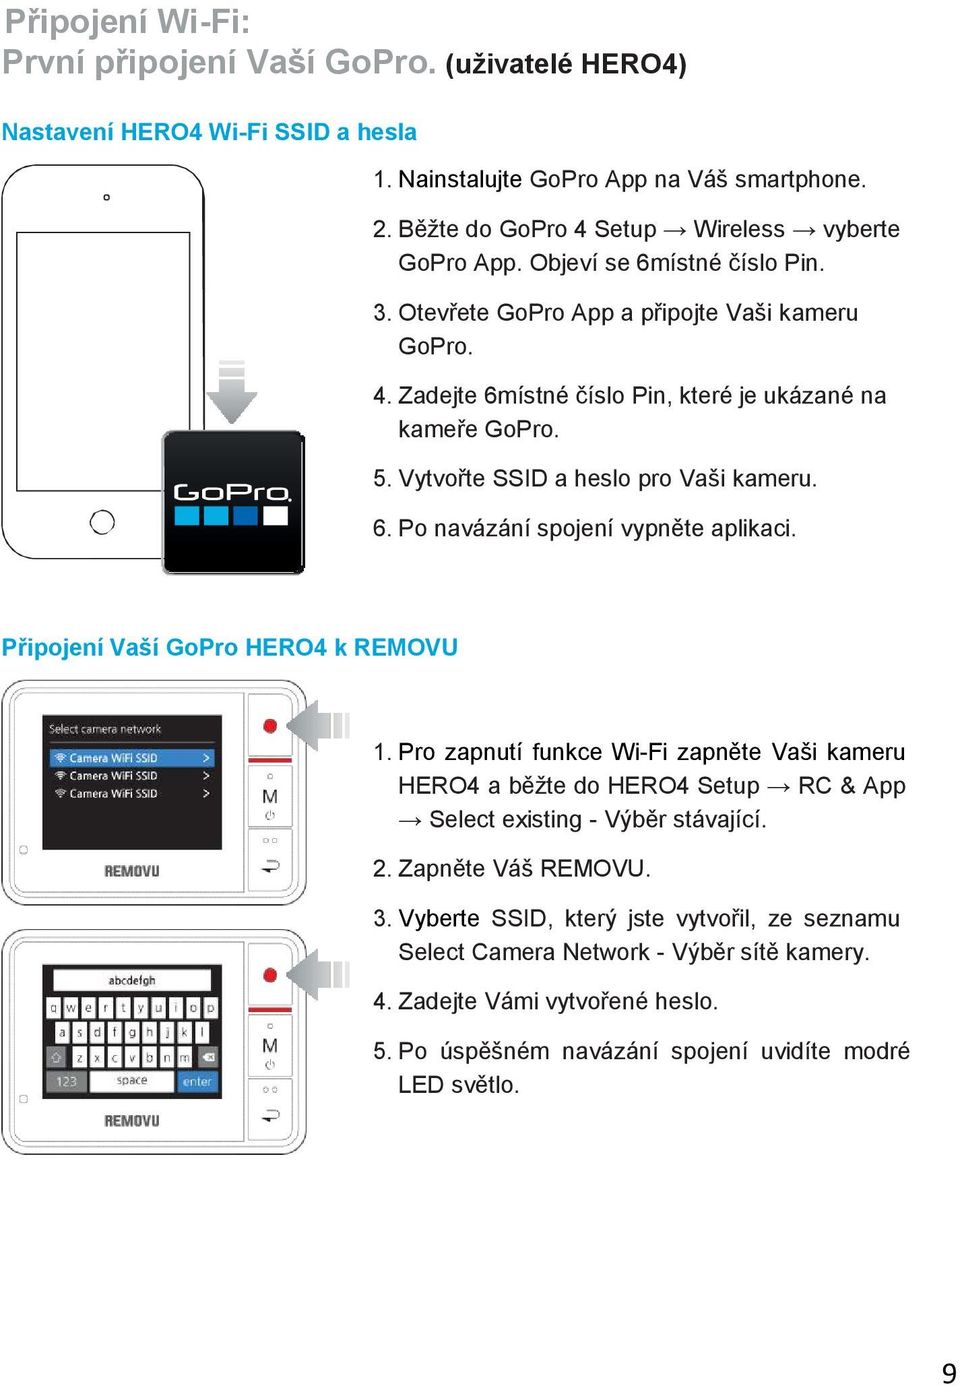 Připojení Vaší GoPro HERO4 k REMOVU 1. Pro zapnutí funkce Wi-Fi zapněte Vaši kameru HERO4 a běžte do HERO4 Setup RC & App Select existing - Výběr stávající. 2. Zapněte Váš REMOVU. 3.